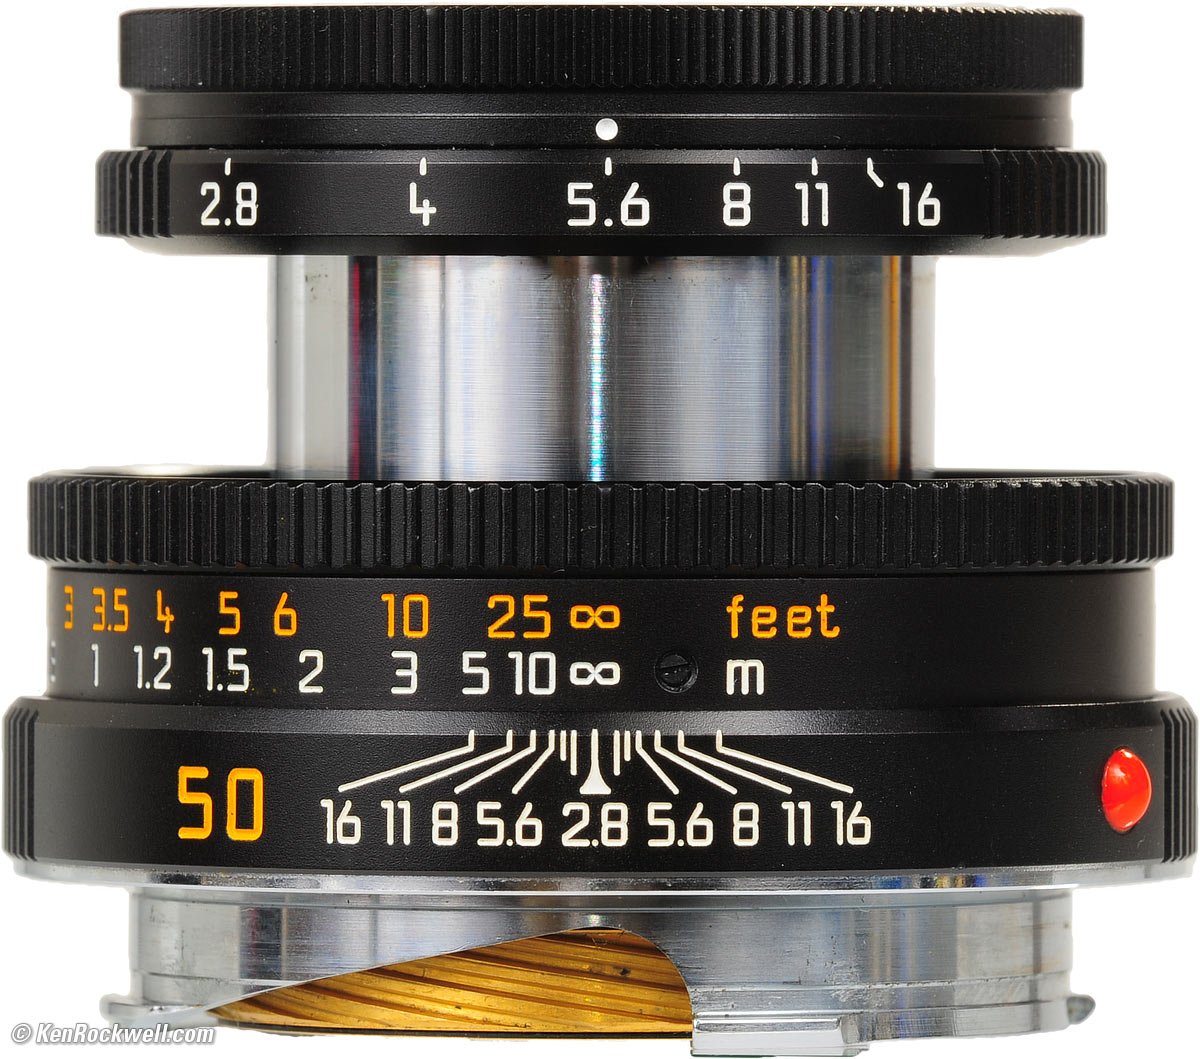 LEICA 50mm f/2.8 ELMAR-M (1994-2007)